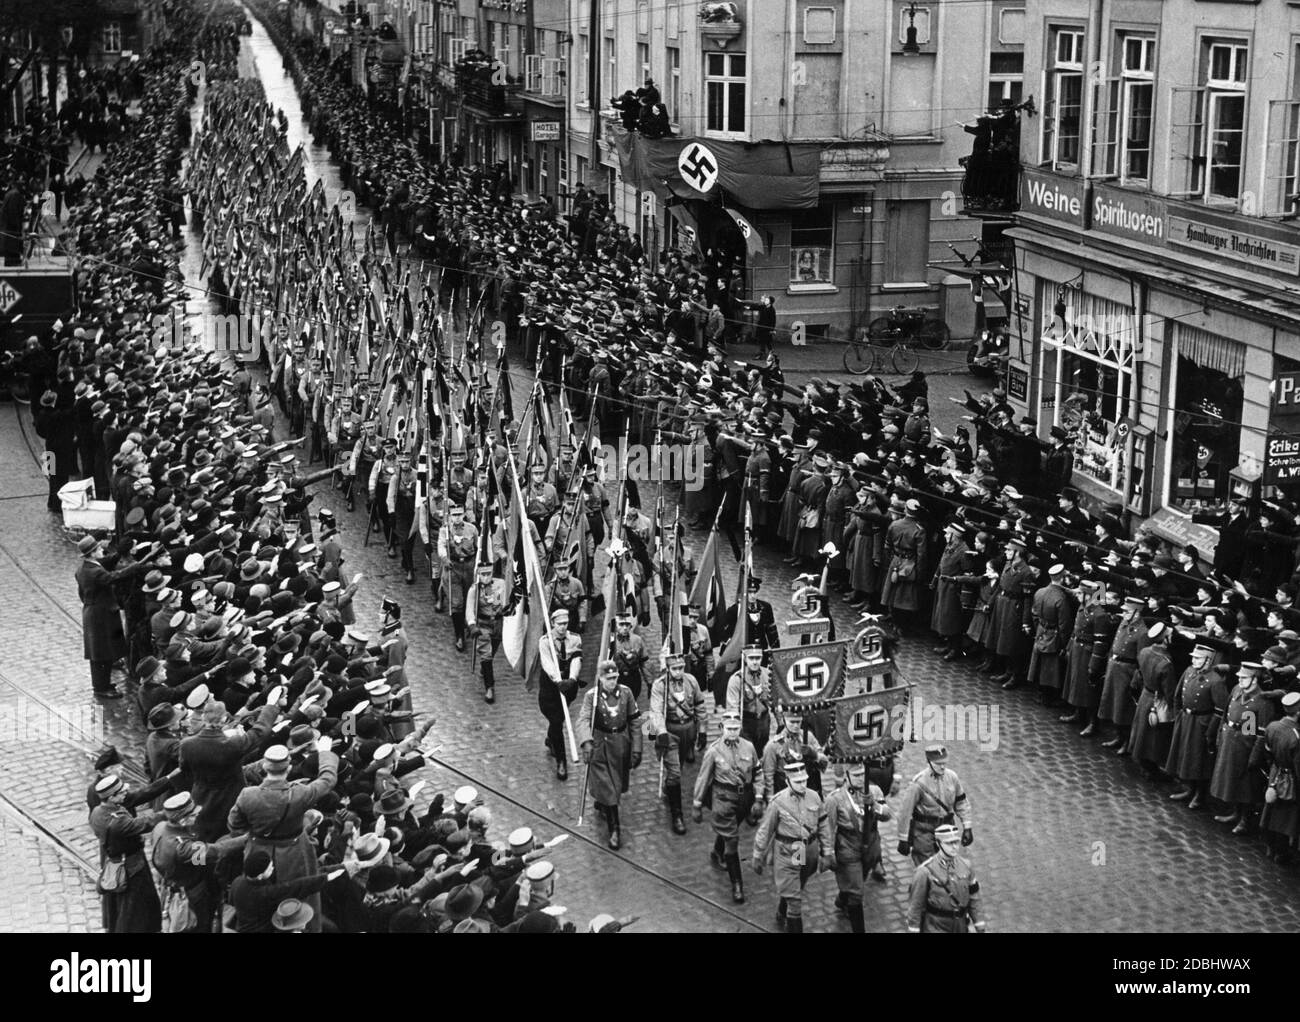 Miembros de SA durante el traslado del fallecido Landesgruppenleiter (líder del grupo nacional) Wilhelm Gustloff a través de Schwerin. Los hombres de la SA en el frente de la imagen están llevando el estándar de la SA y los hombres detrás de ellos están sosteniendo banderas de tormenta. Foto de stock